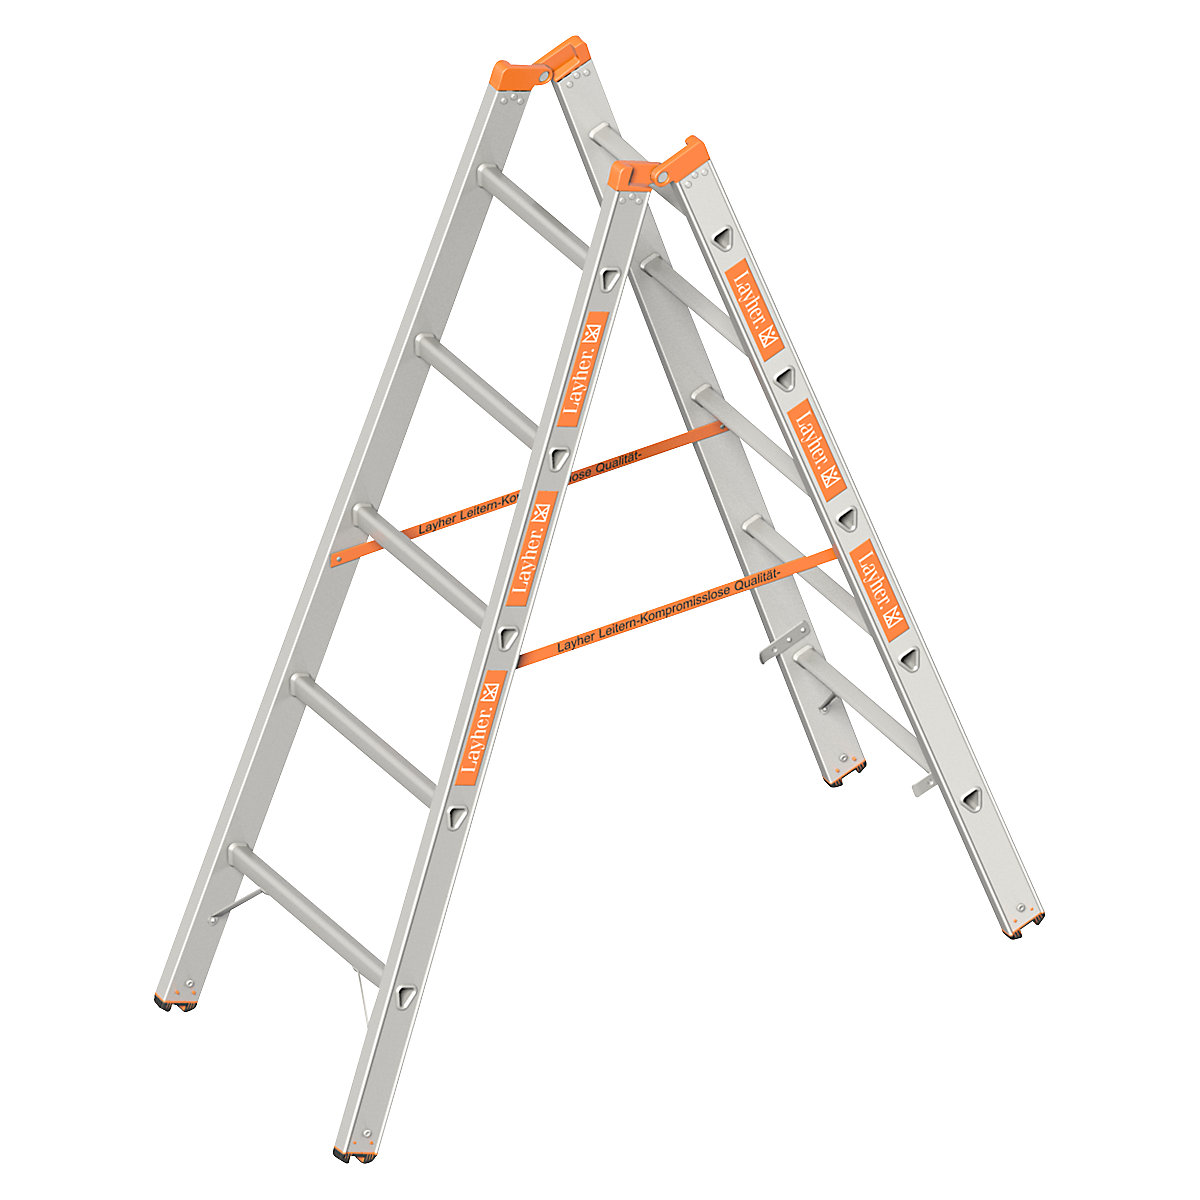 sneeuwman rok accumuleren Layher – Double sided rung ladder: double sided access | KAISER+KRAFT